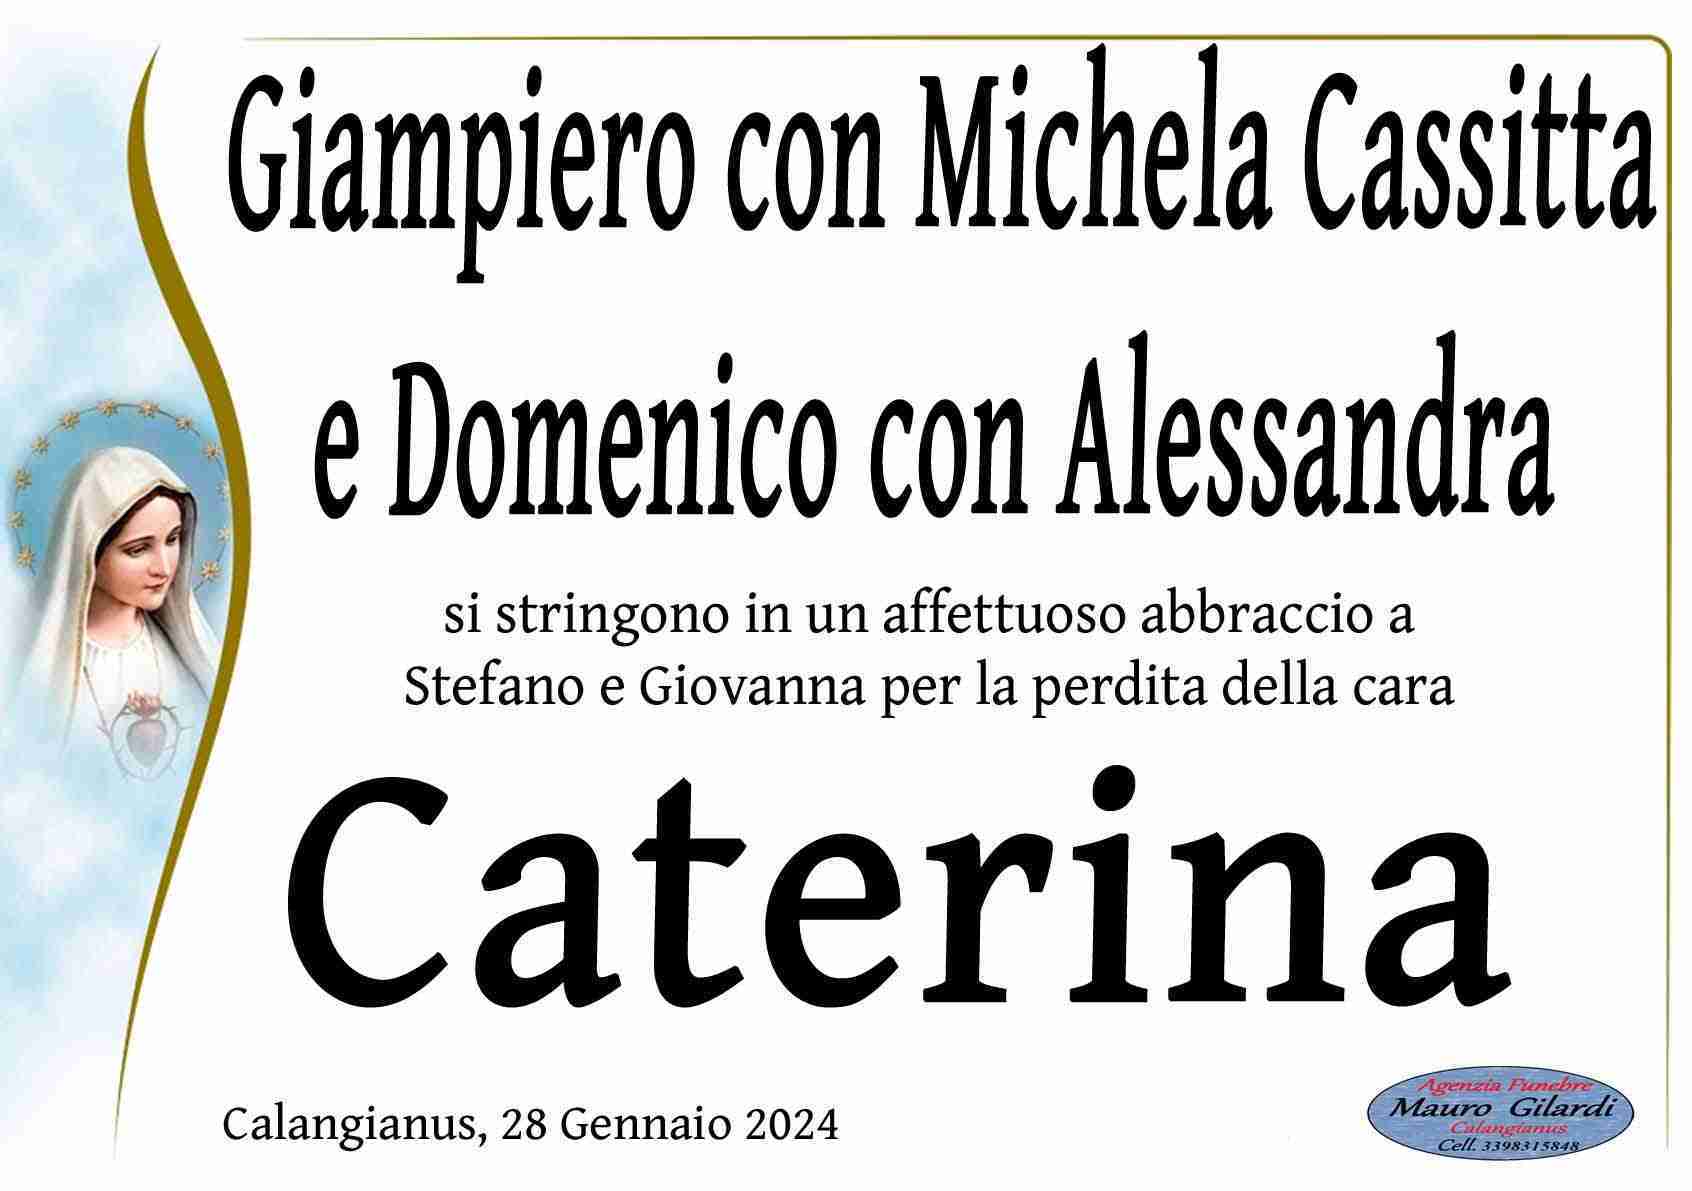 Caterina Cassitta